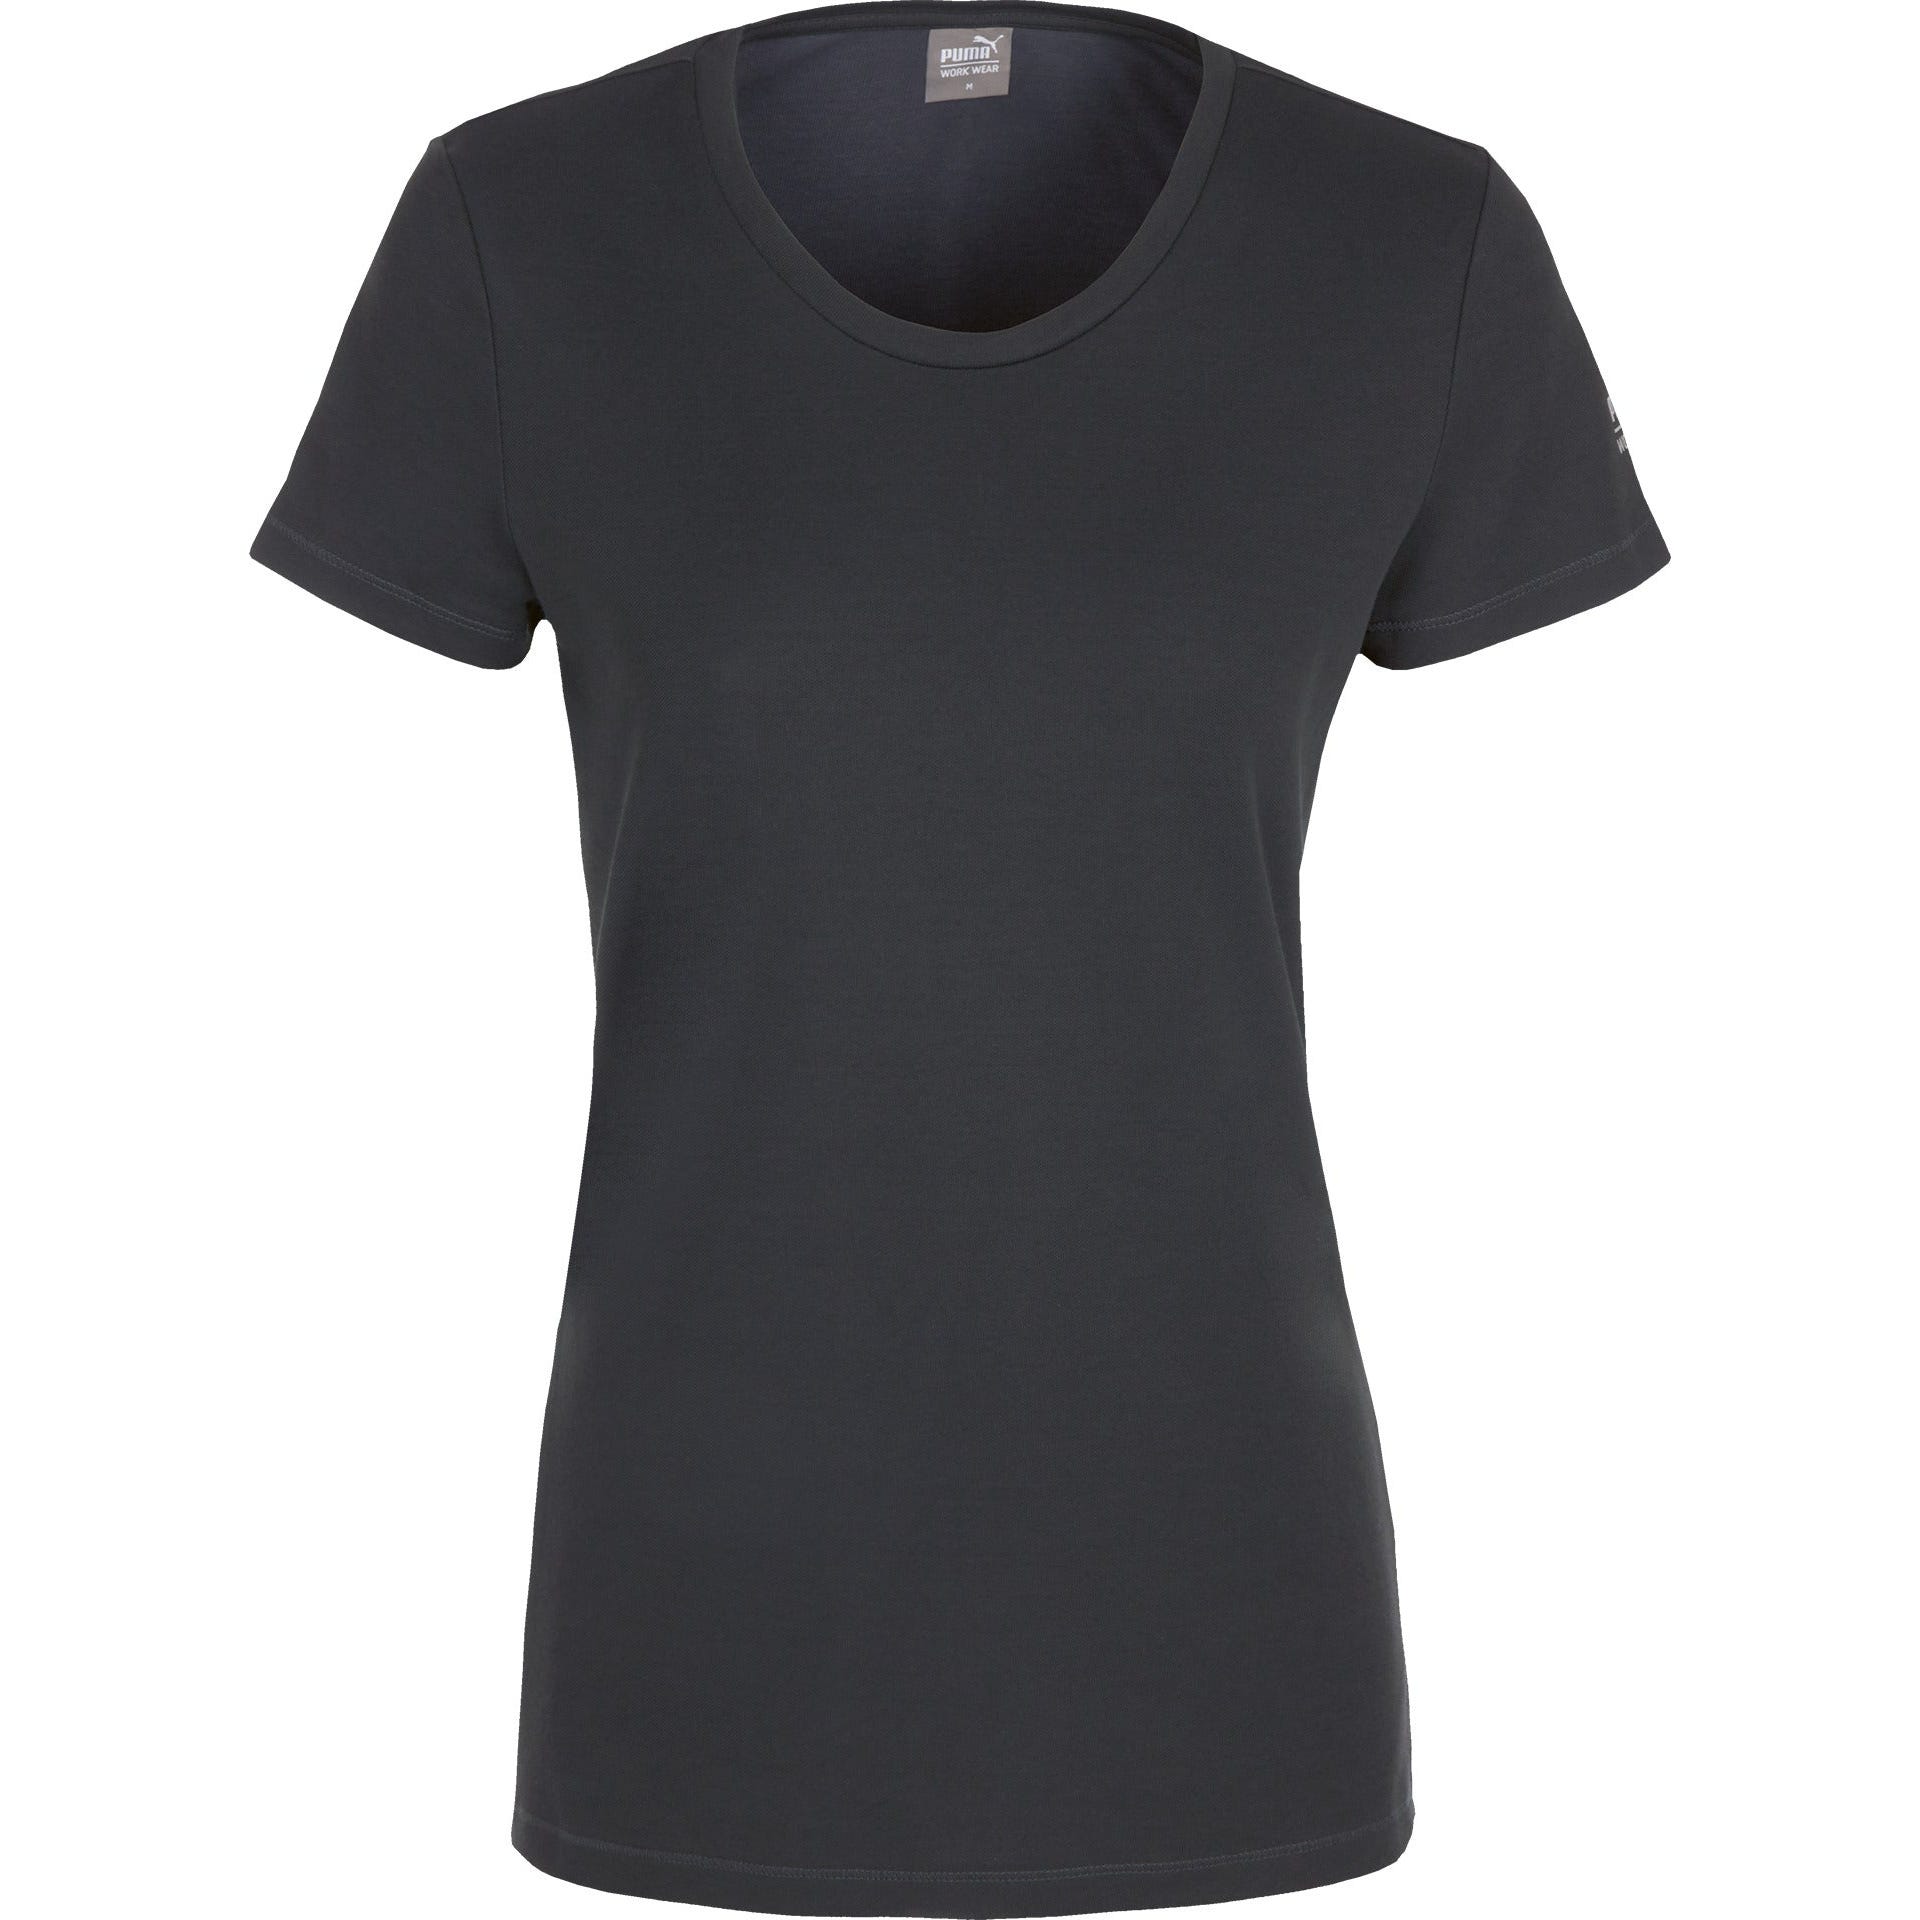 Puma - Tee-shirt de travail col rond pour femmes - Gris - L 3